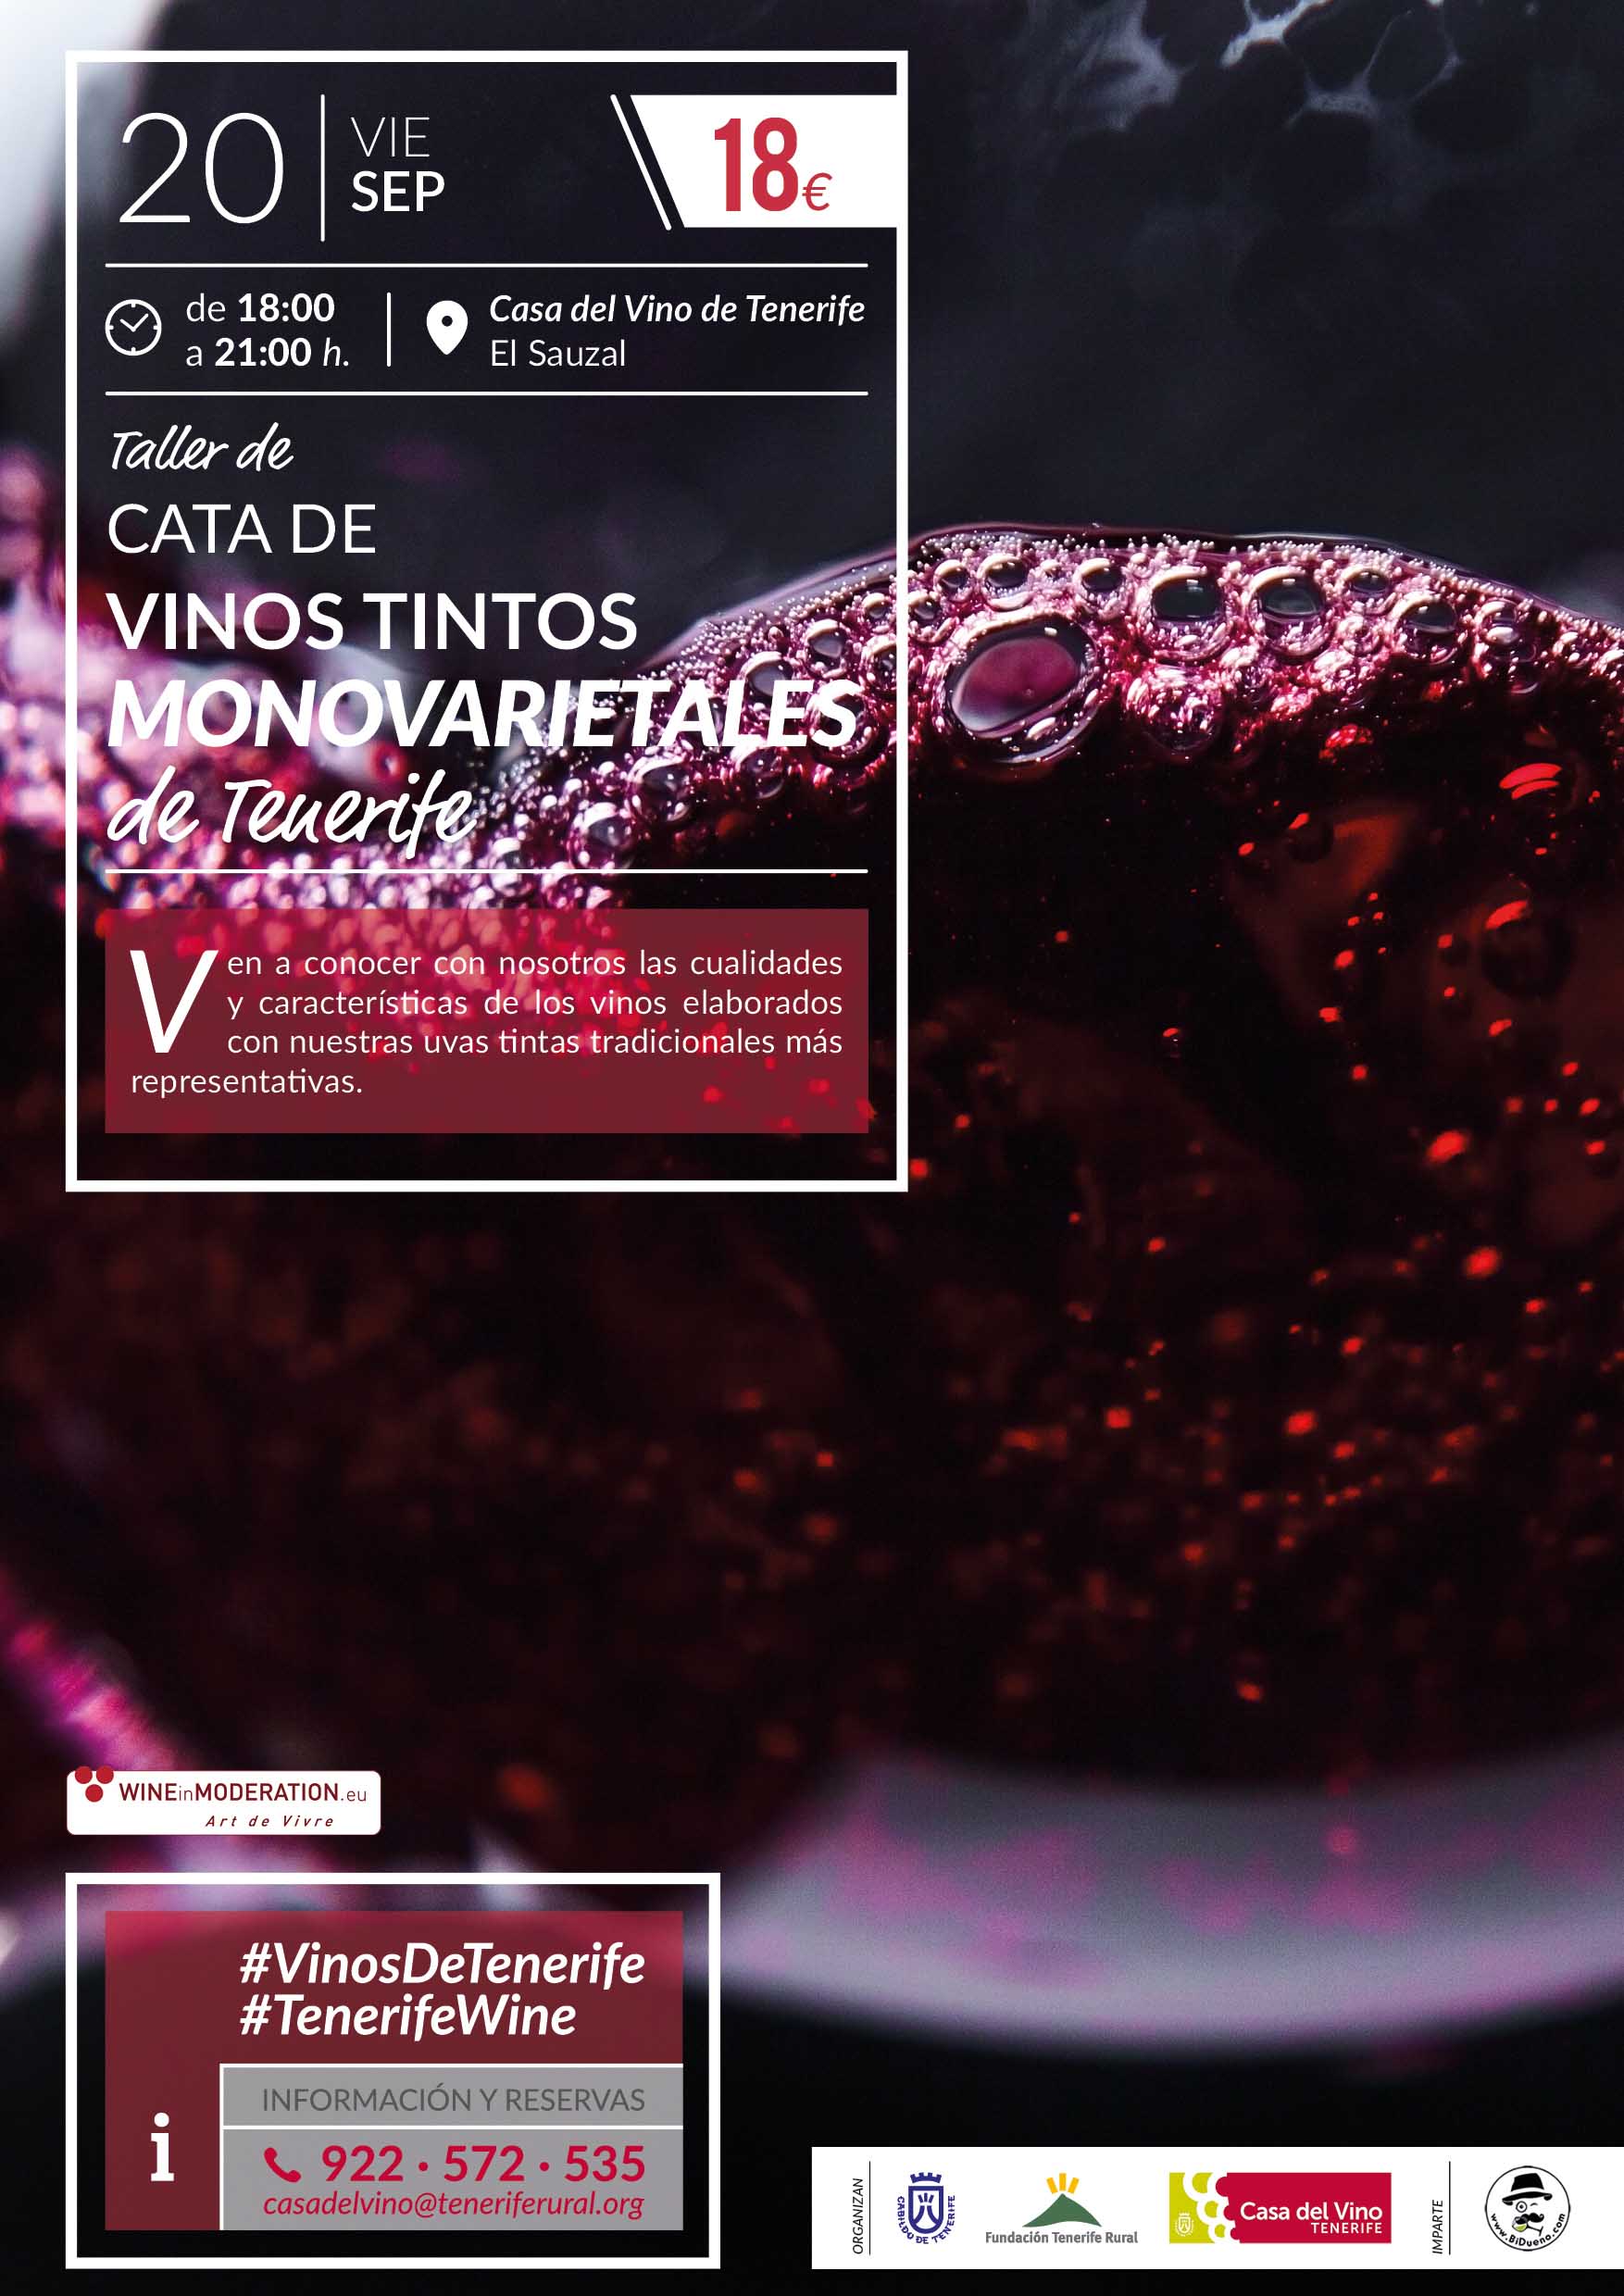 Taller de cata de vinos Monovarietales Tintos de Tenerife